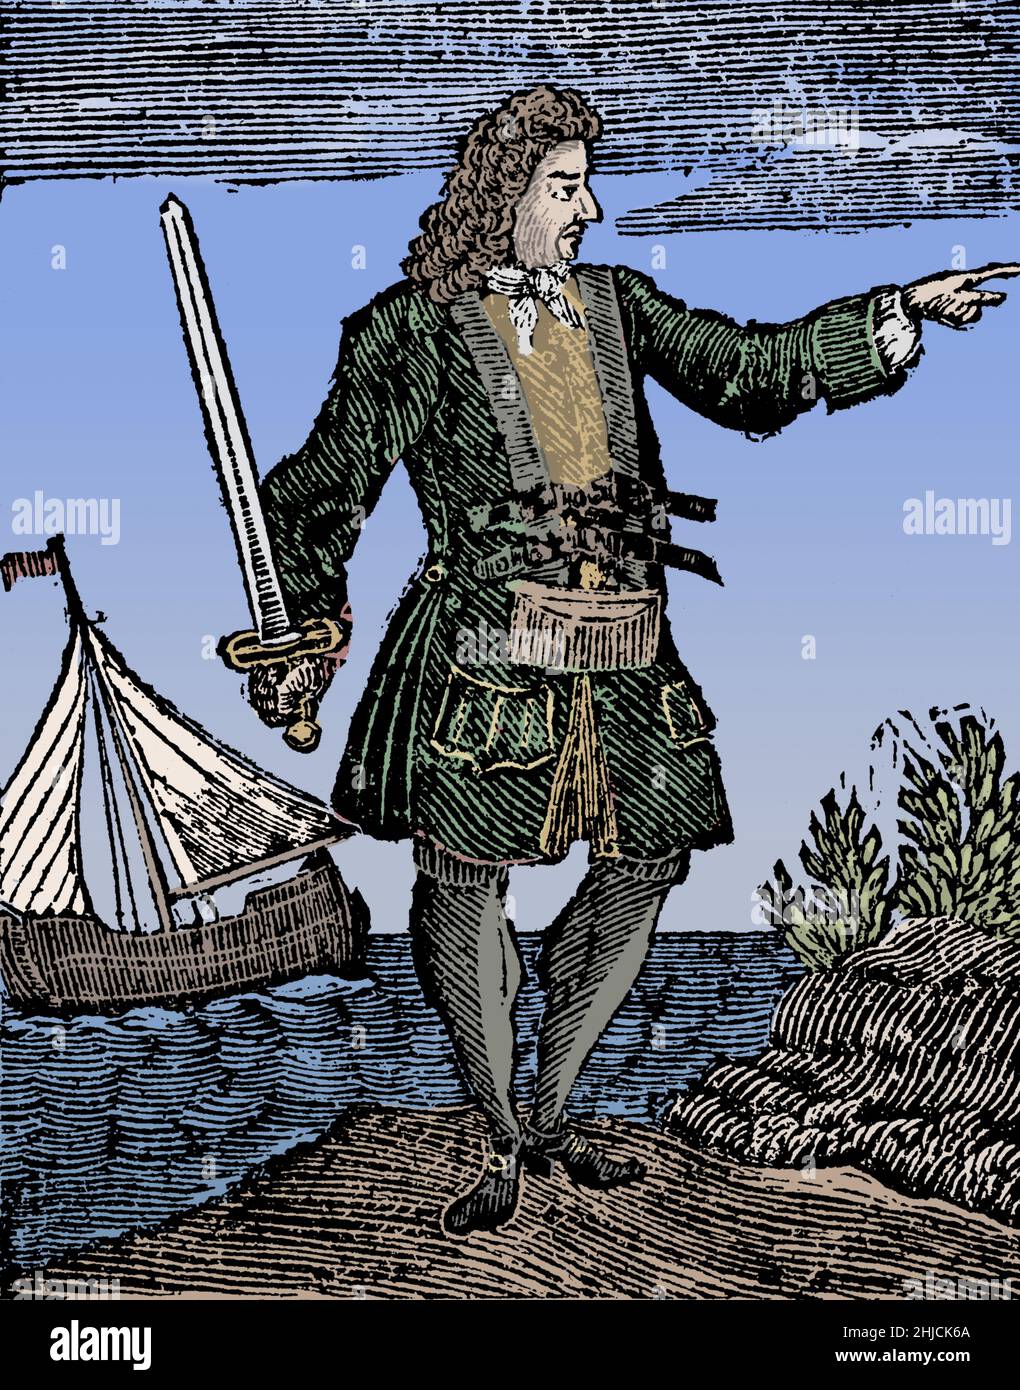 Charles Vane (1680 - 29 mars 1721) était un pirate anglais qui a opéré à partir de la base notoire de New Providence aux Bahamas. Ses capacités de navigation et de combat de navires étaient inaptes, et il a réussi à piller de nombreux navires. Alors qu'il opérait entre Cuba et Hispaniola, son équipage l'accusait de lâcheté et il fut laissé derrière lui avec une petite boucle et quelques pirates fidèles. Il a capturé plusieurs navires et reconstruit sa flotte de pirates, mais un ouragan a détruit la plupart d'entre eux et presque toute son équipage s'est noyé. Il a finalement été capturé, emprisonné, jugé, reconnu coupable et pendu. Colorisé. Banque D'Images